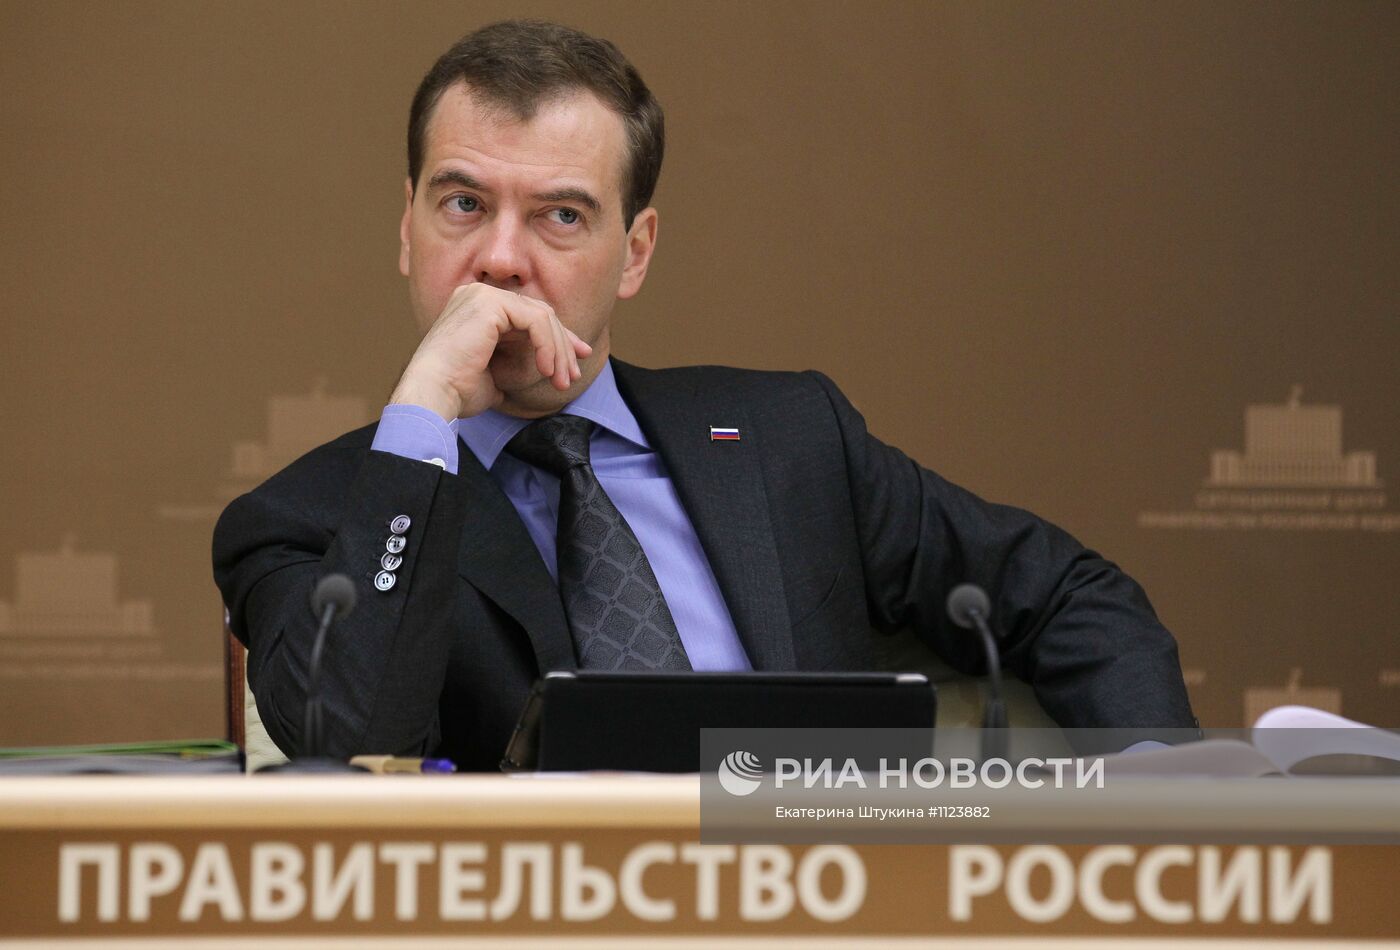 Д. Медведев проводит селекторное совещание